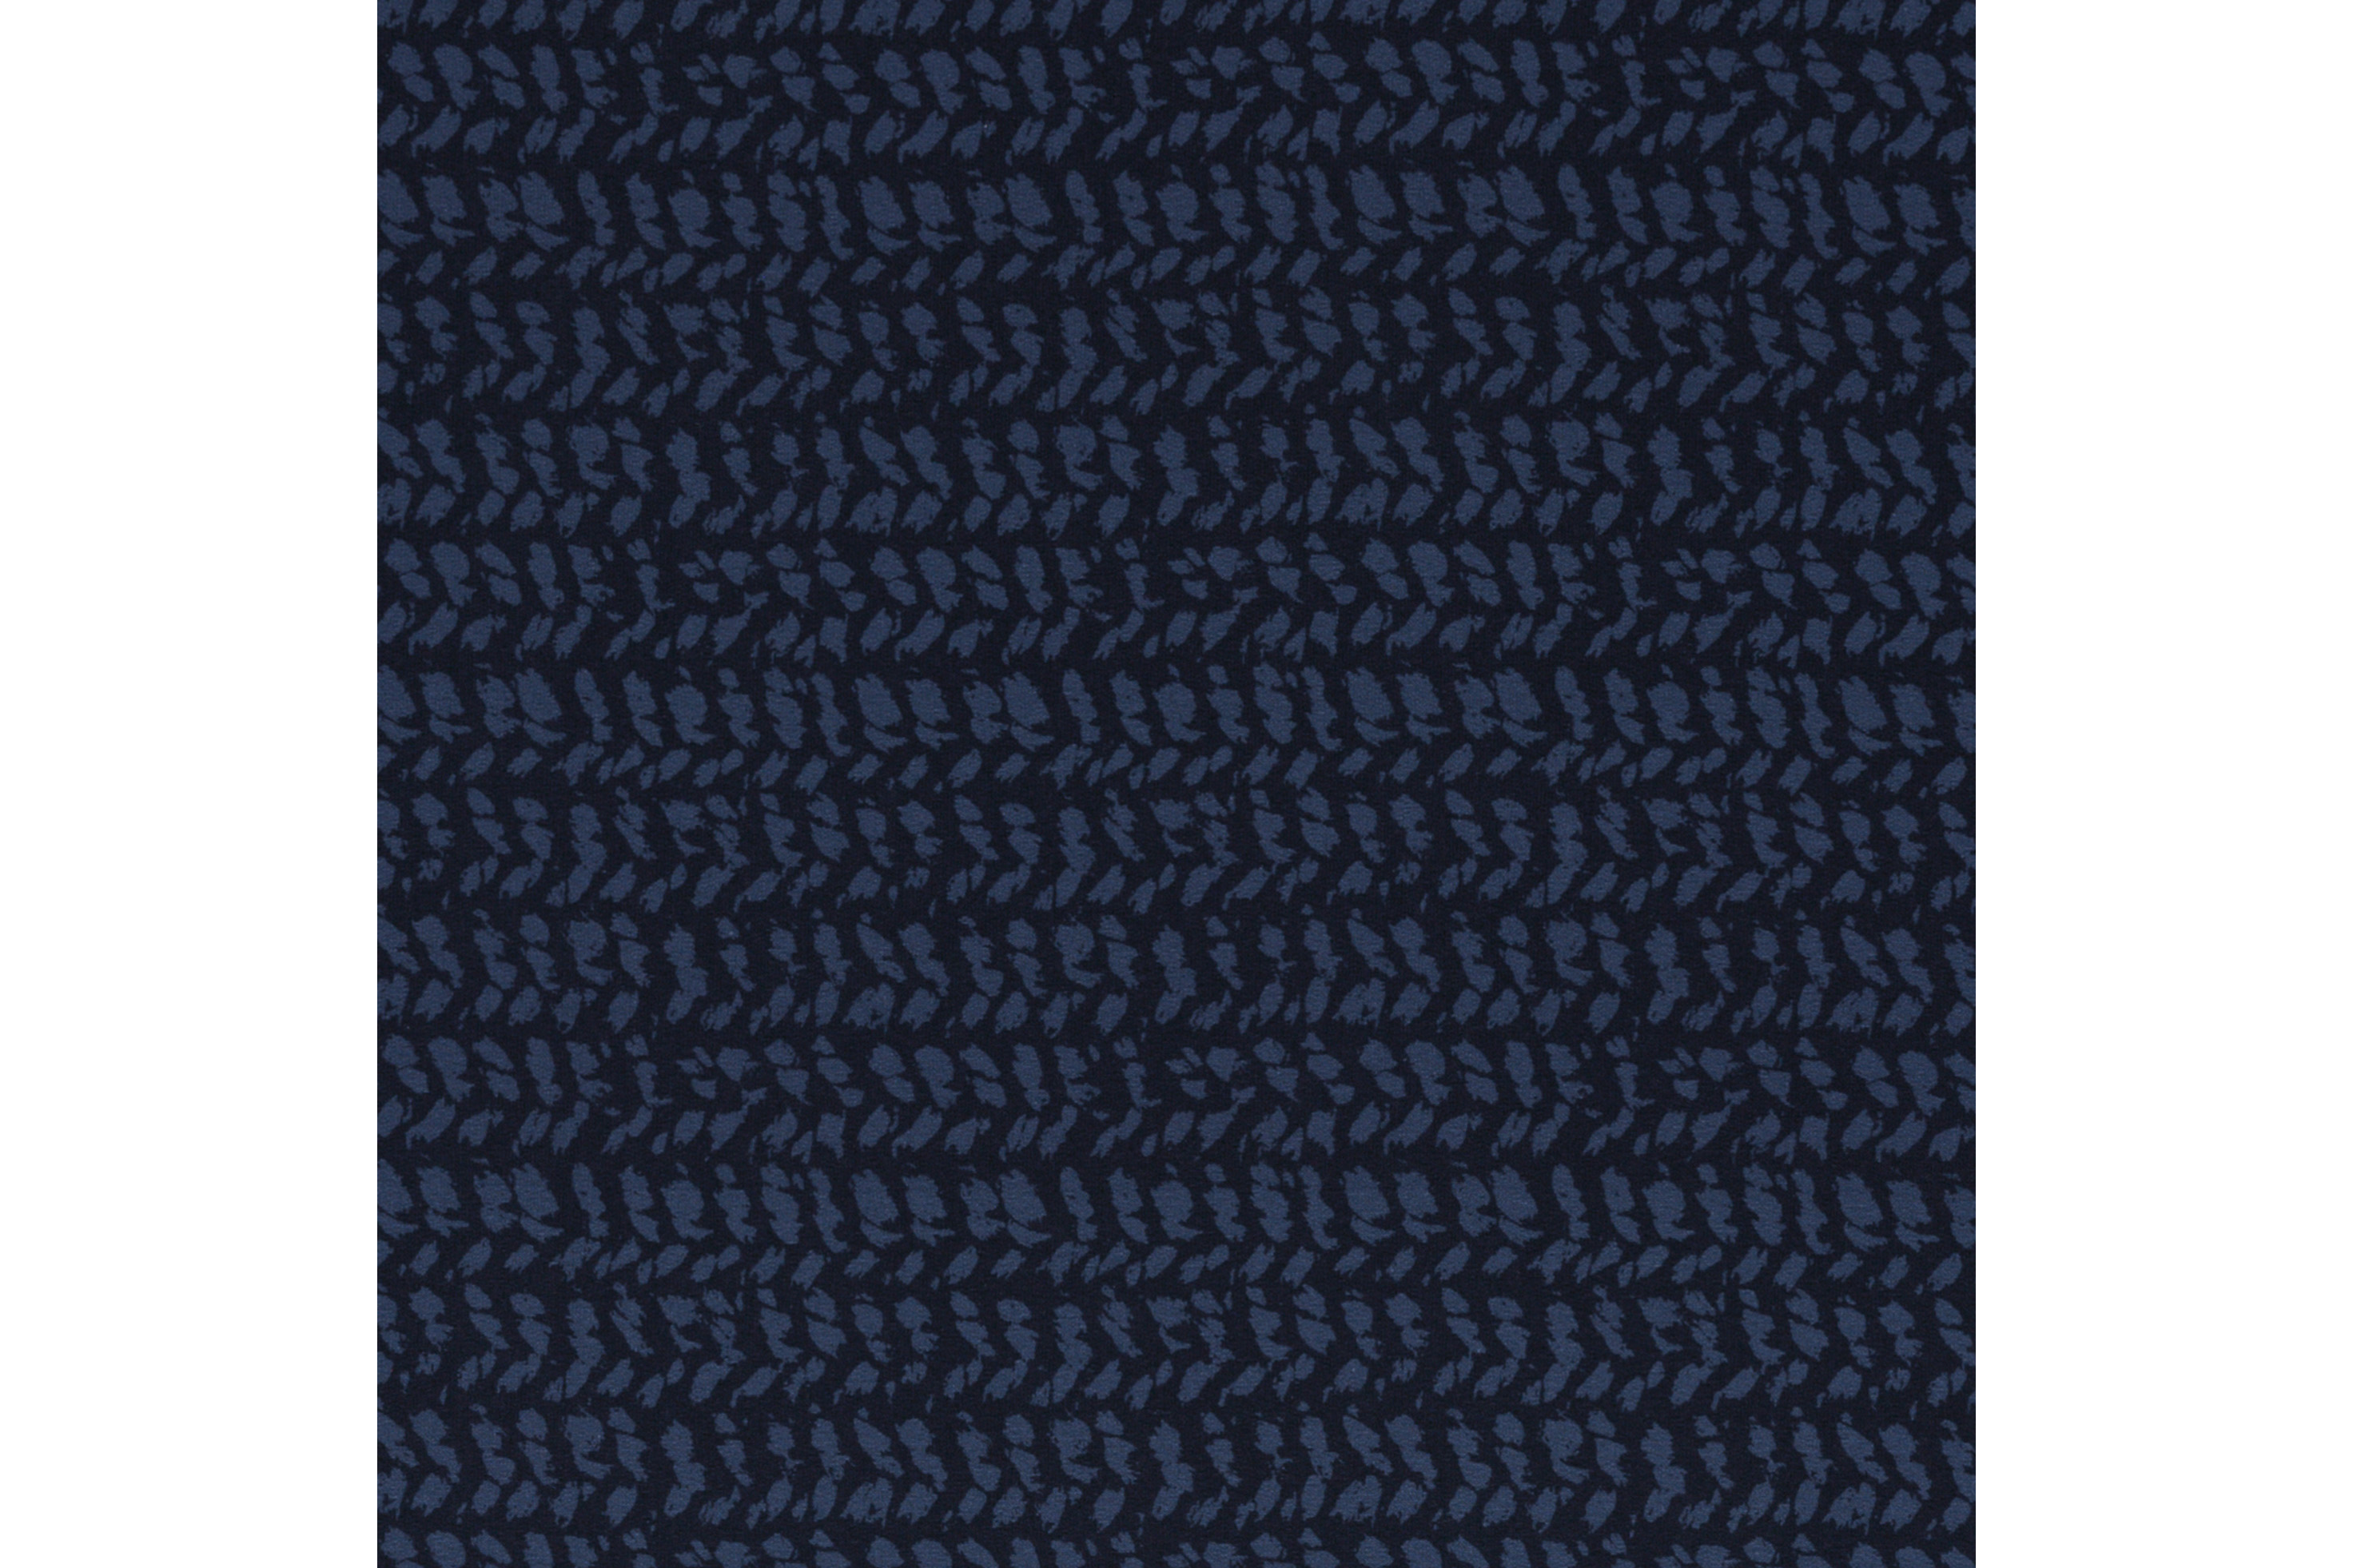 French Terry, Herringbone knitt